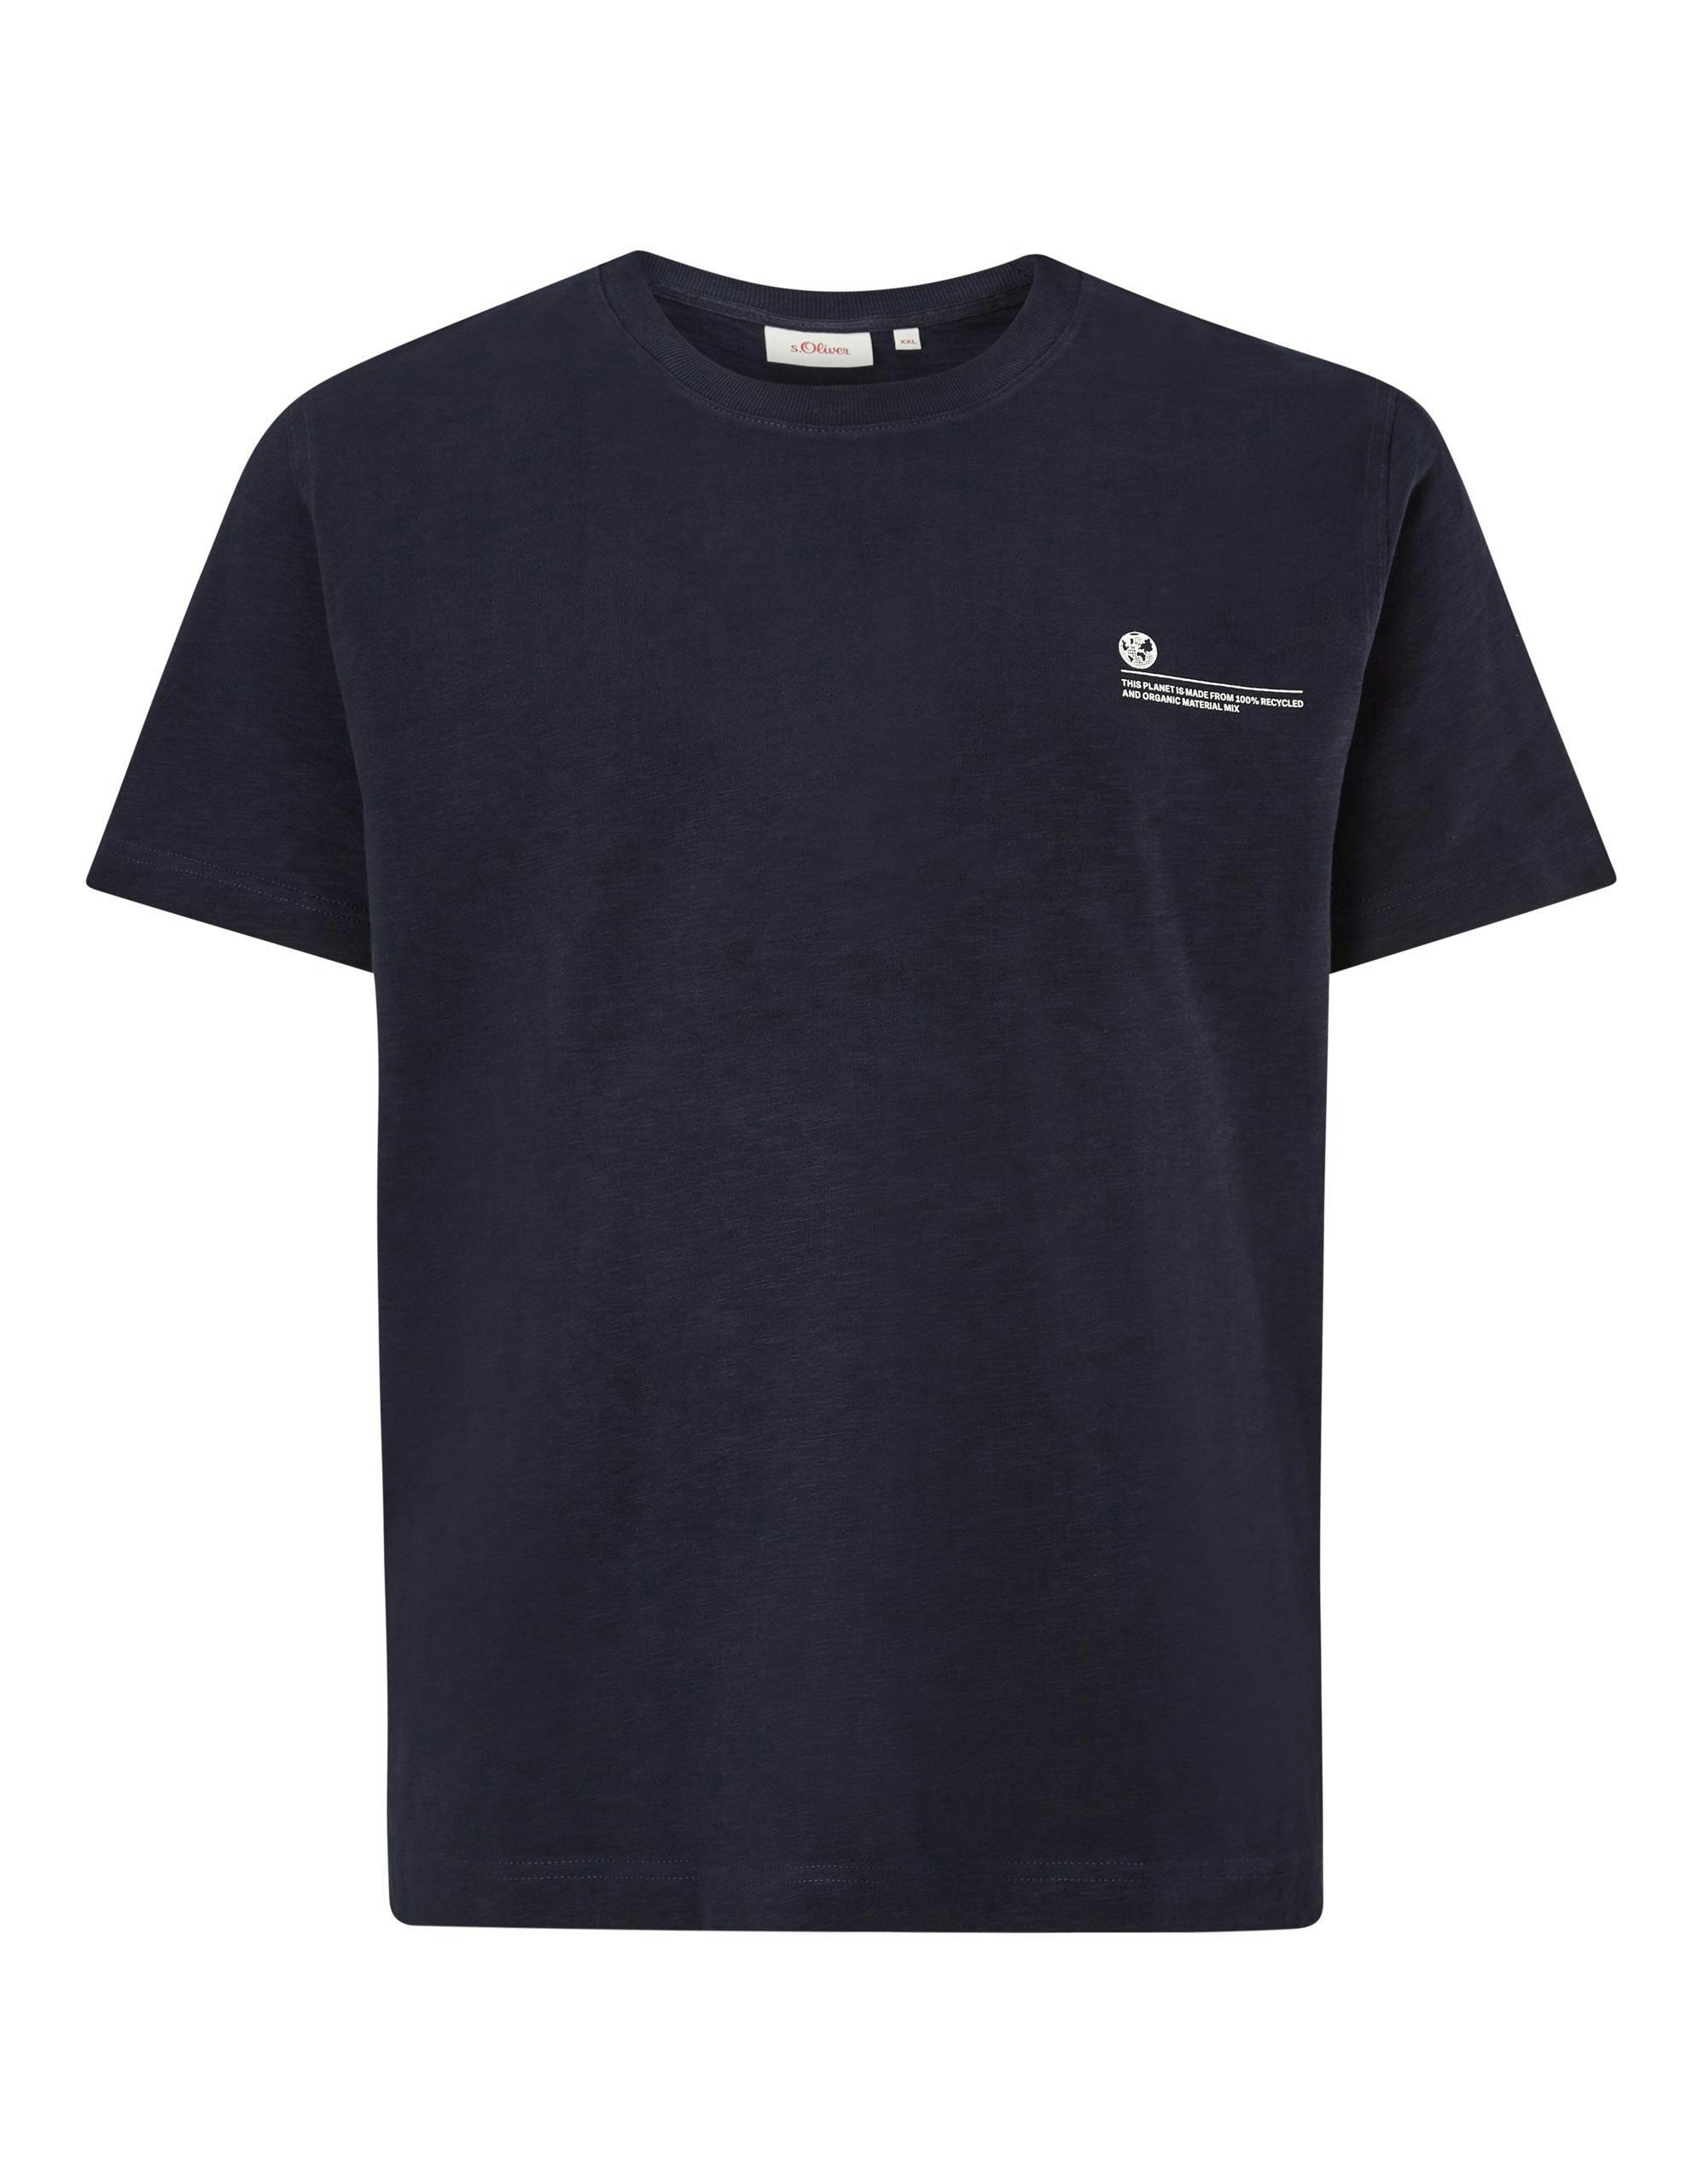 5 Farben Herren T-Shirt Print Adler Oberteil kurzarm Shirt stretch Regular Fit 